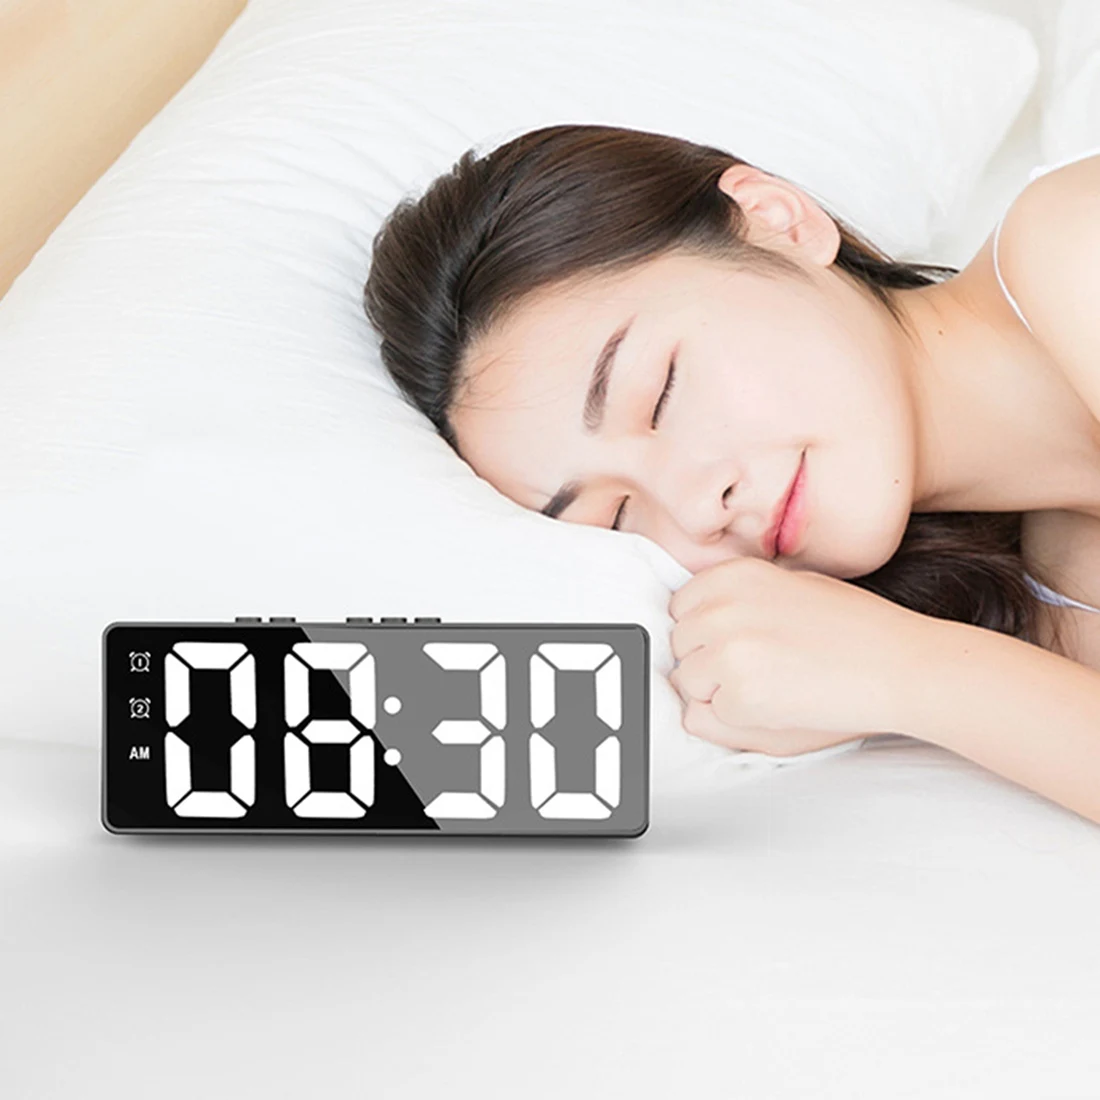 

Цифровой будильник (с питанием от аккумулятора) или настольные часы с питанием от USB, Повтор сигнала, Режим ночной съемки часов, электронные зеркальные часы черного цвета